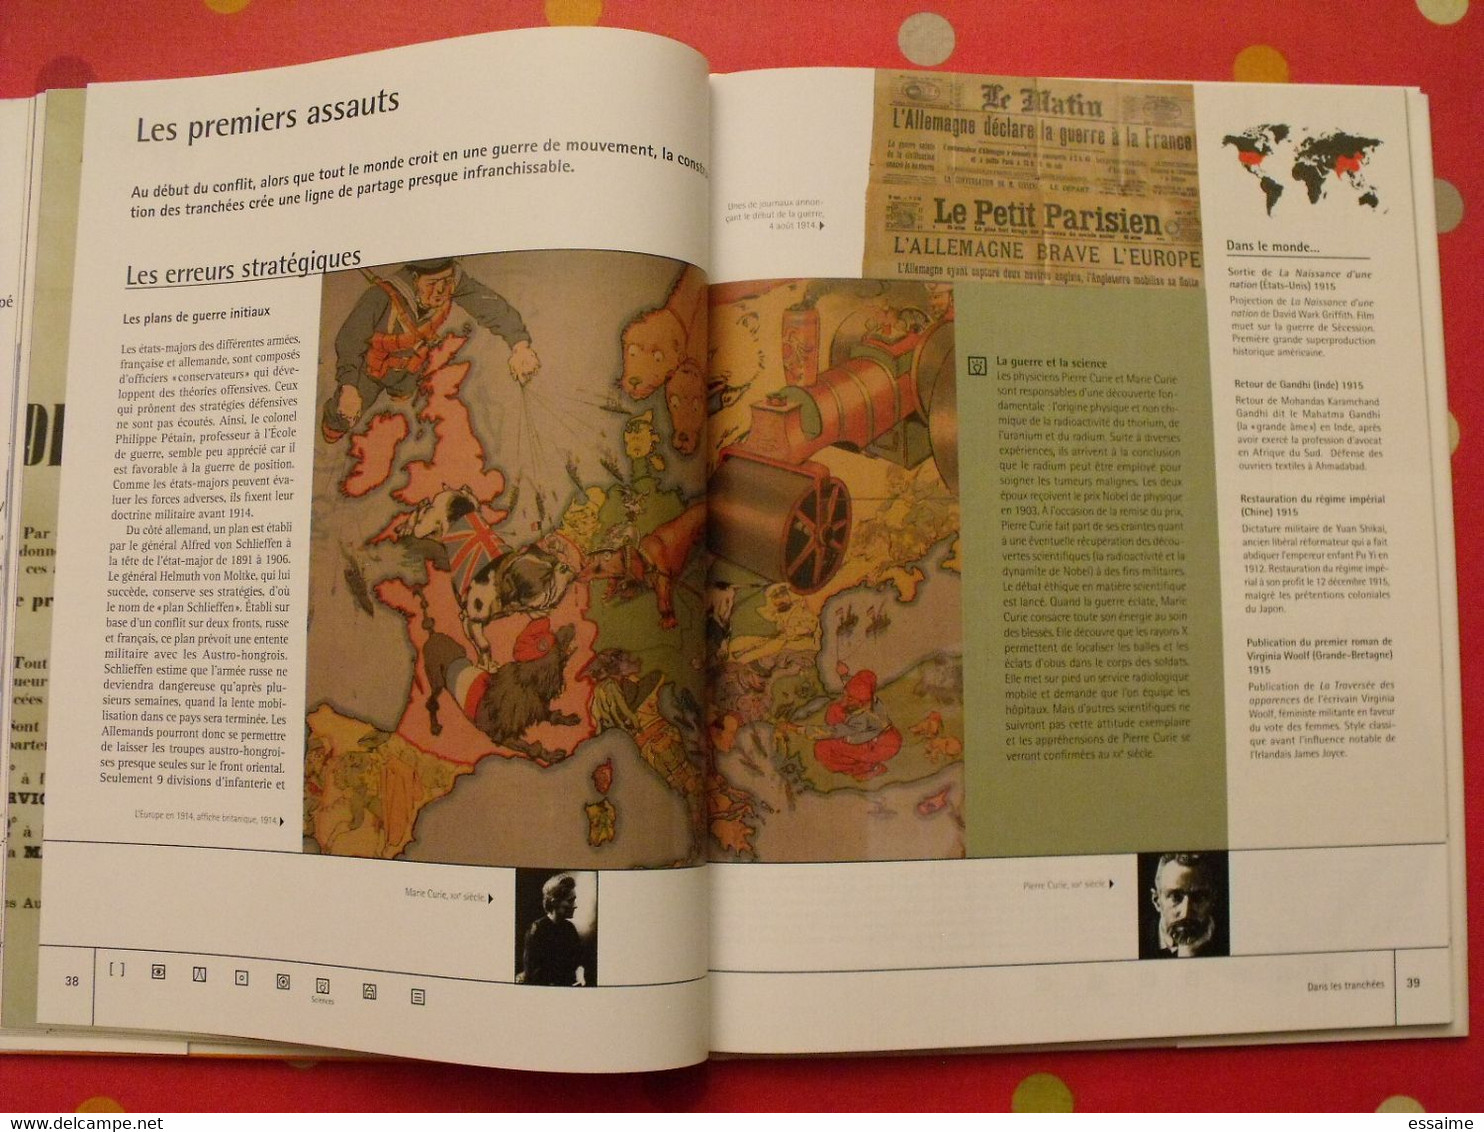 encyclopédie de l'histoire de France 7. Dans les tranchées. 1914-1918. très illustré. 2005